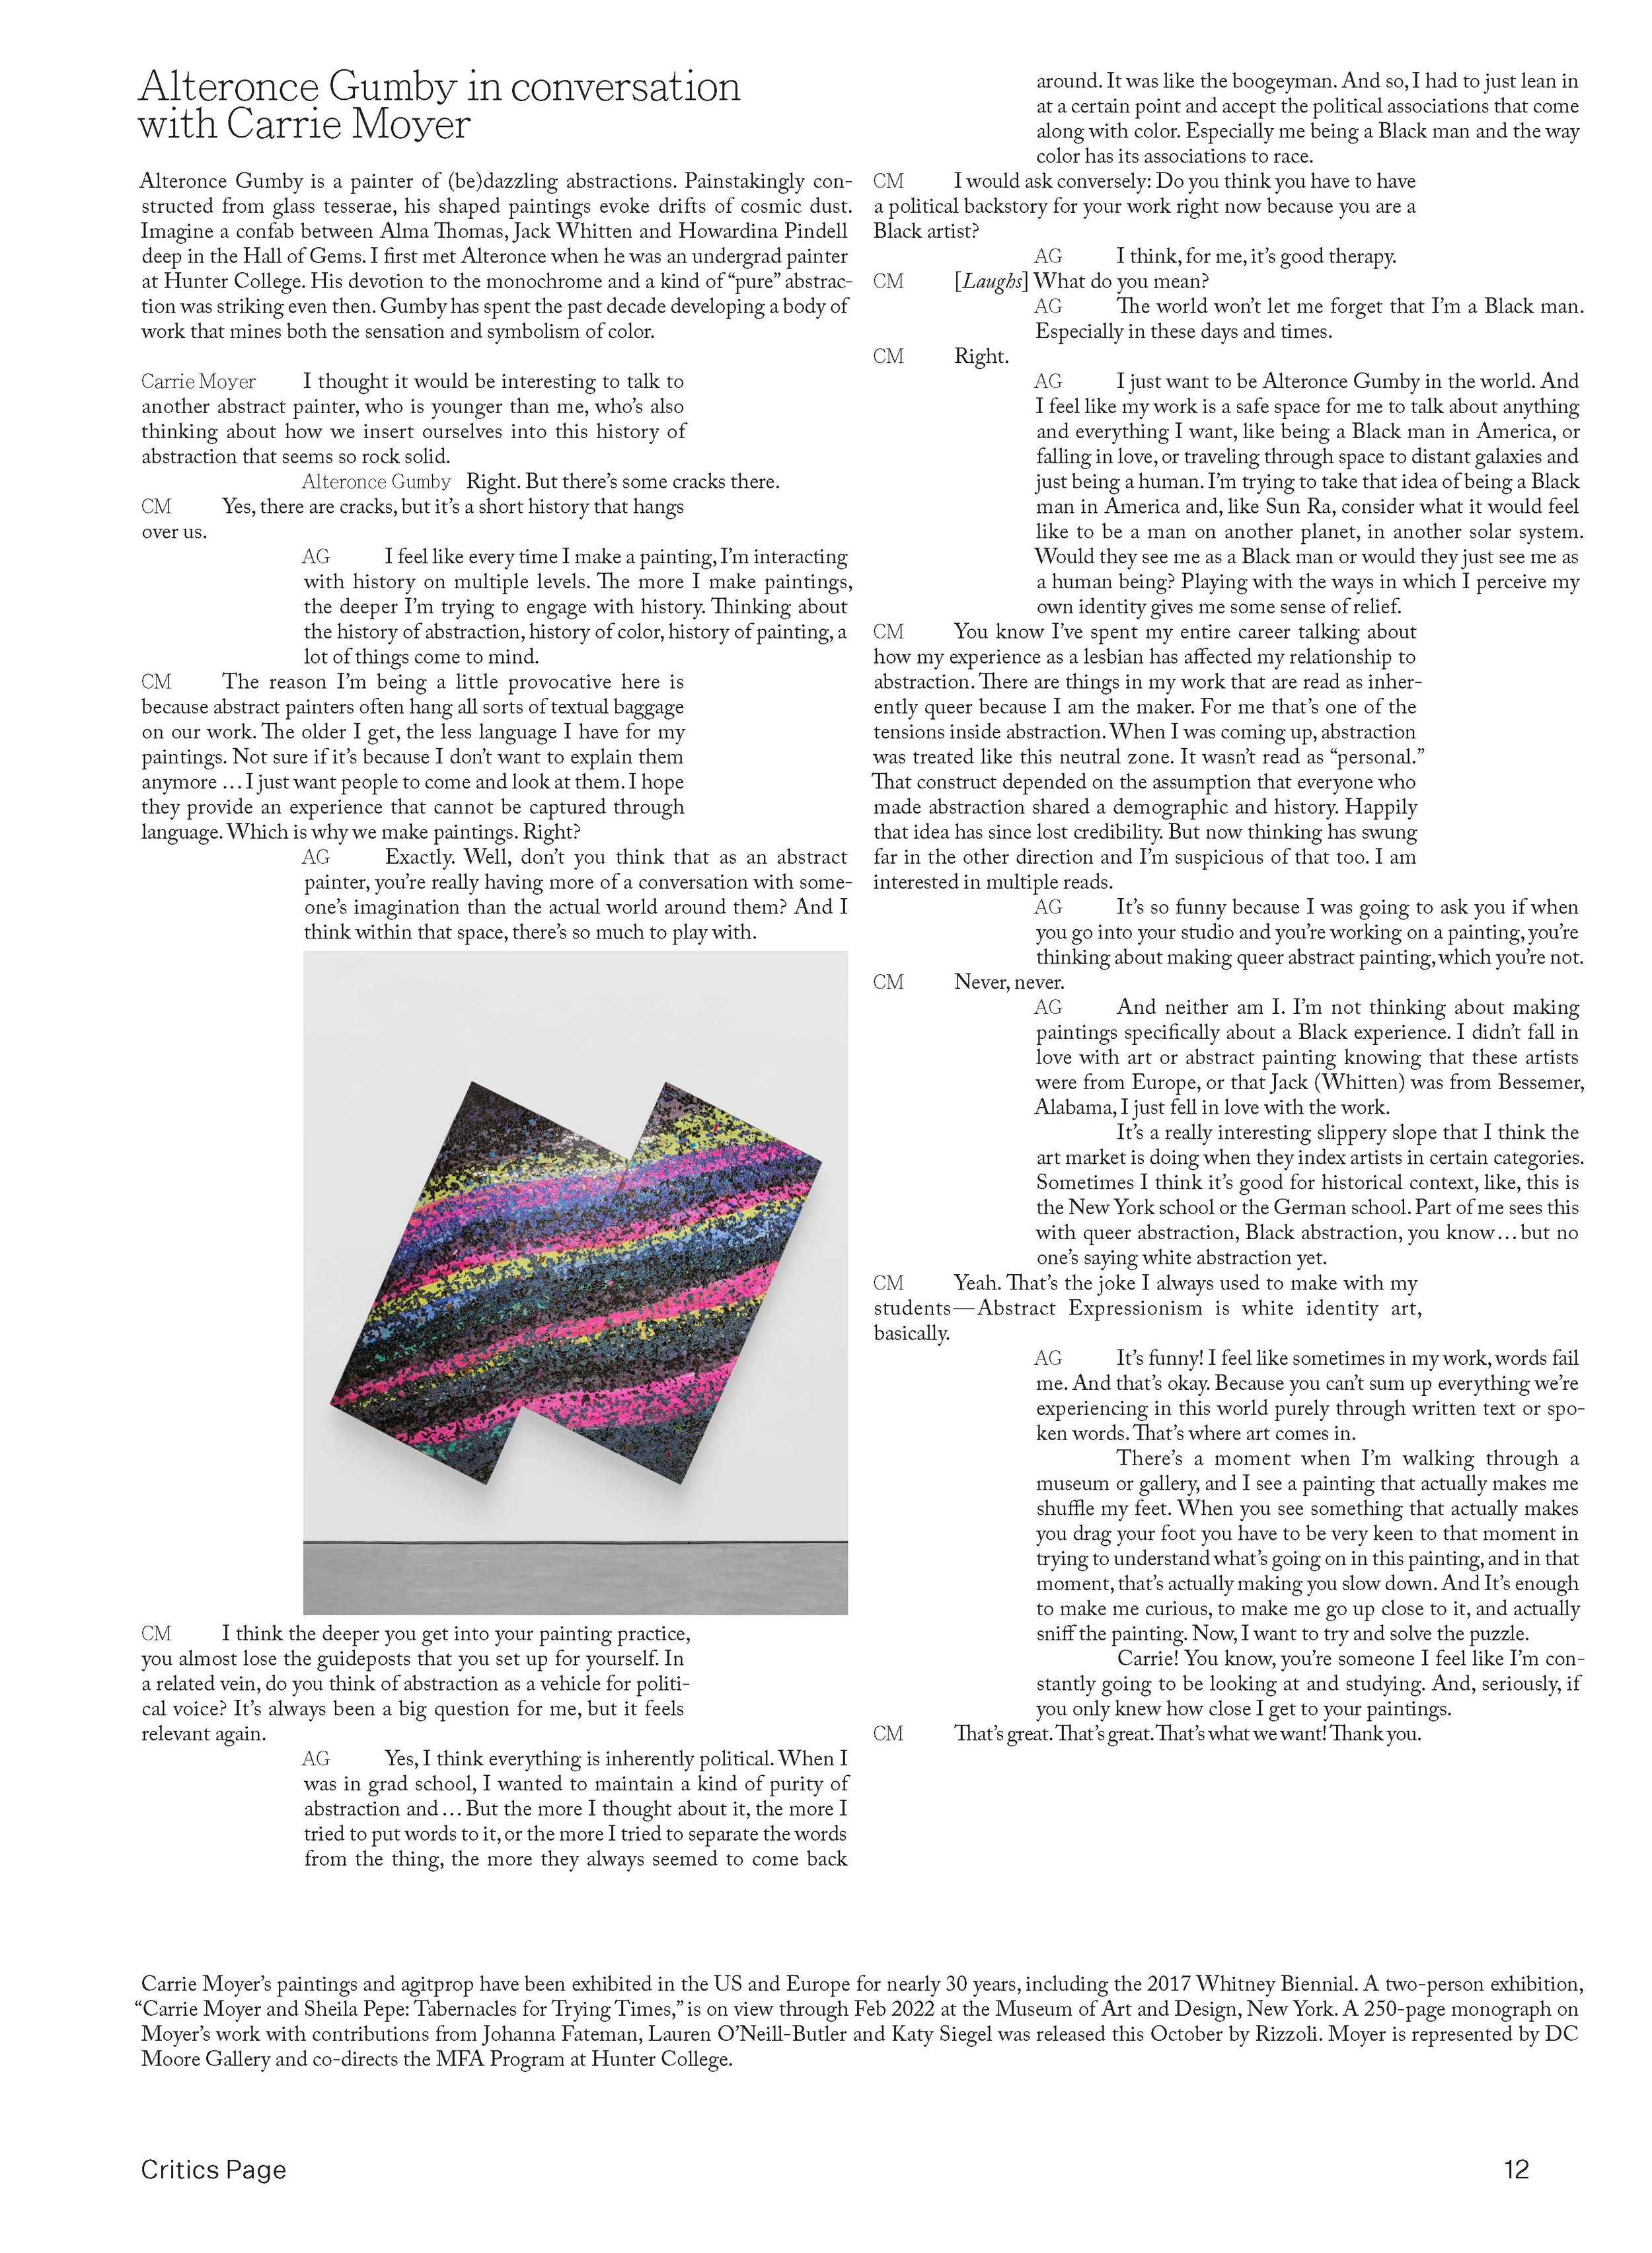 BR_Nov2021_CriticsPage_design_final copy_Page_11.jpg